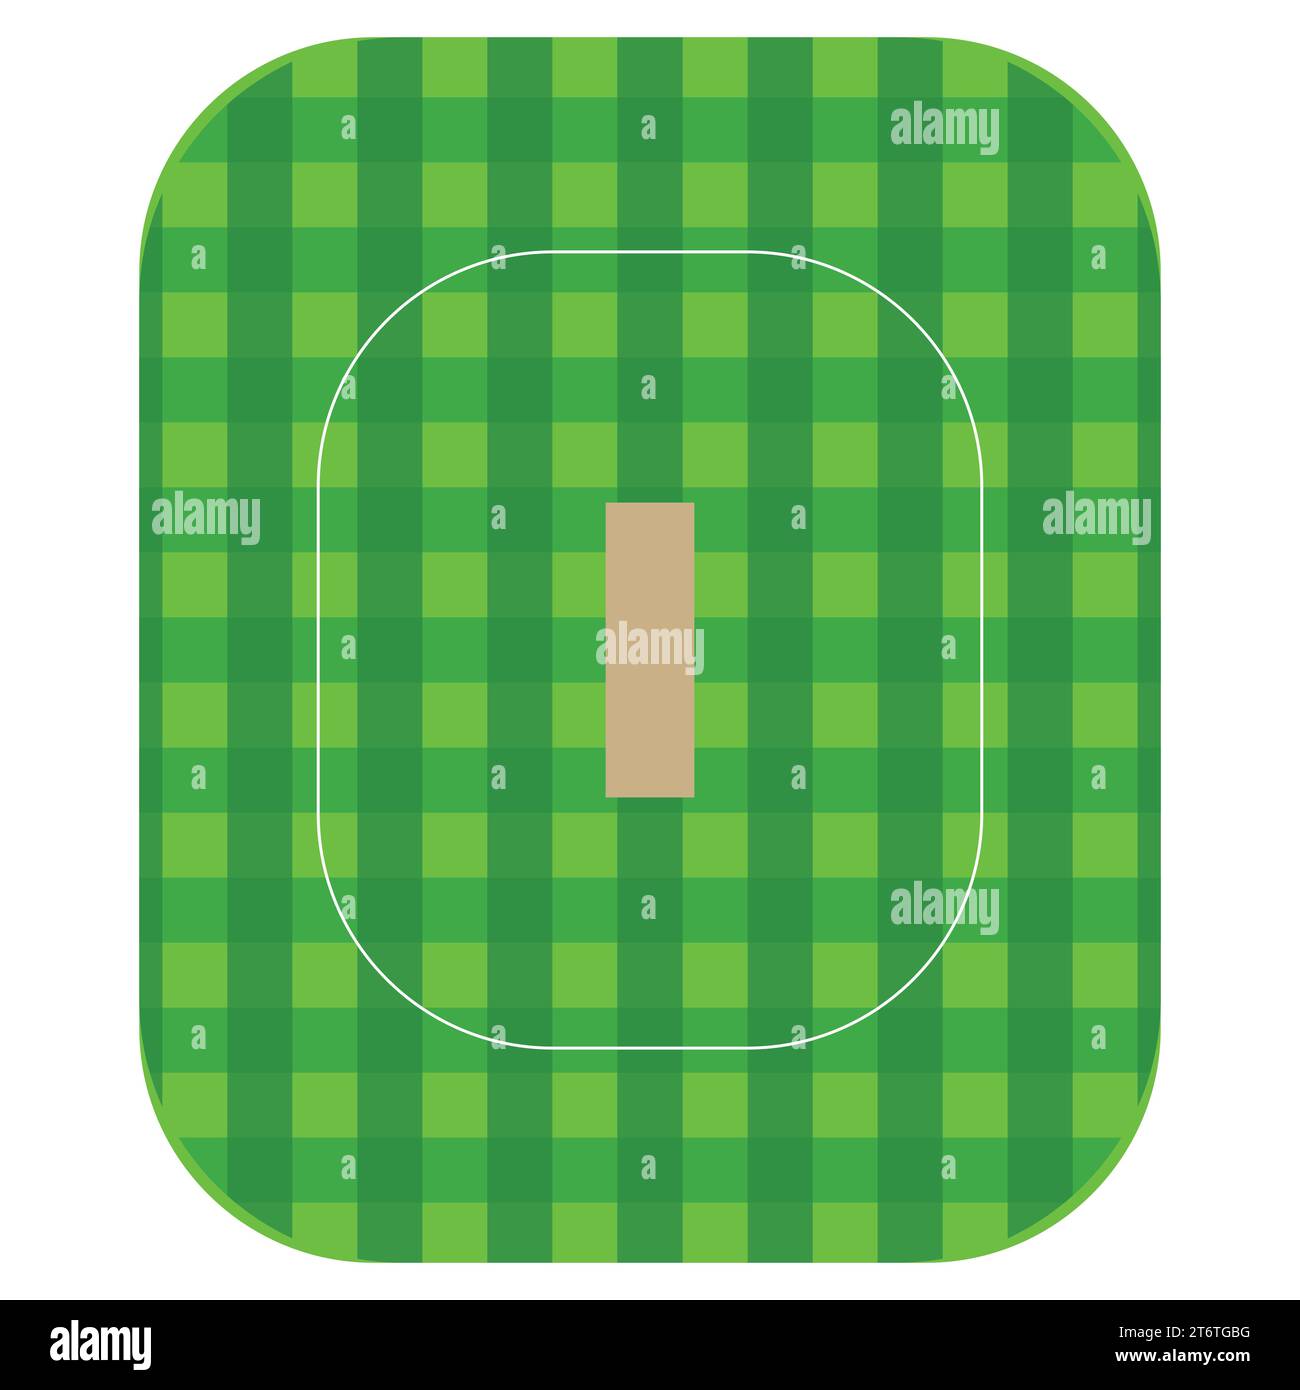 Vue de dessus Cricket Green Field Pitch fond vert coloré, Illustration vectorielle Abstract image modifiable Illustration de Vecteur